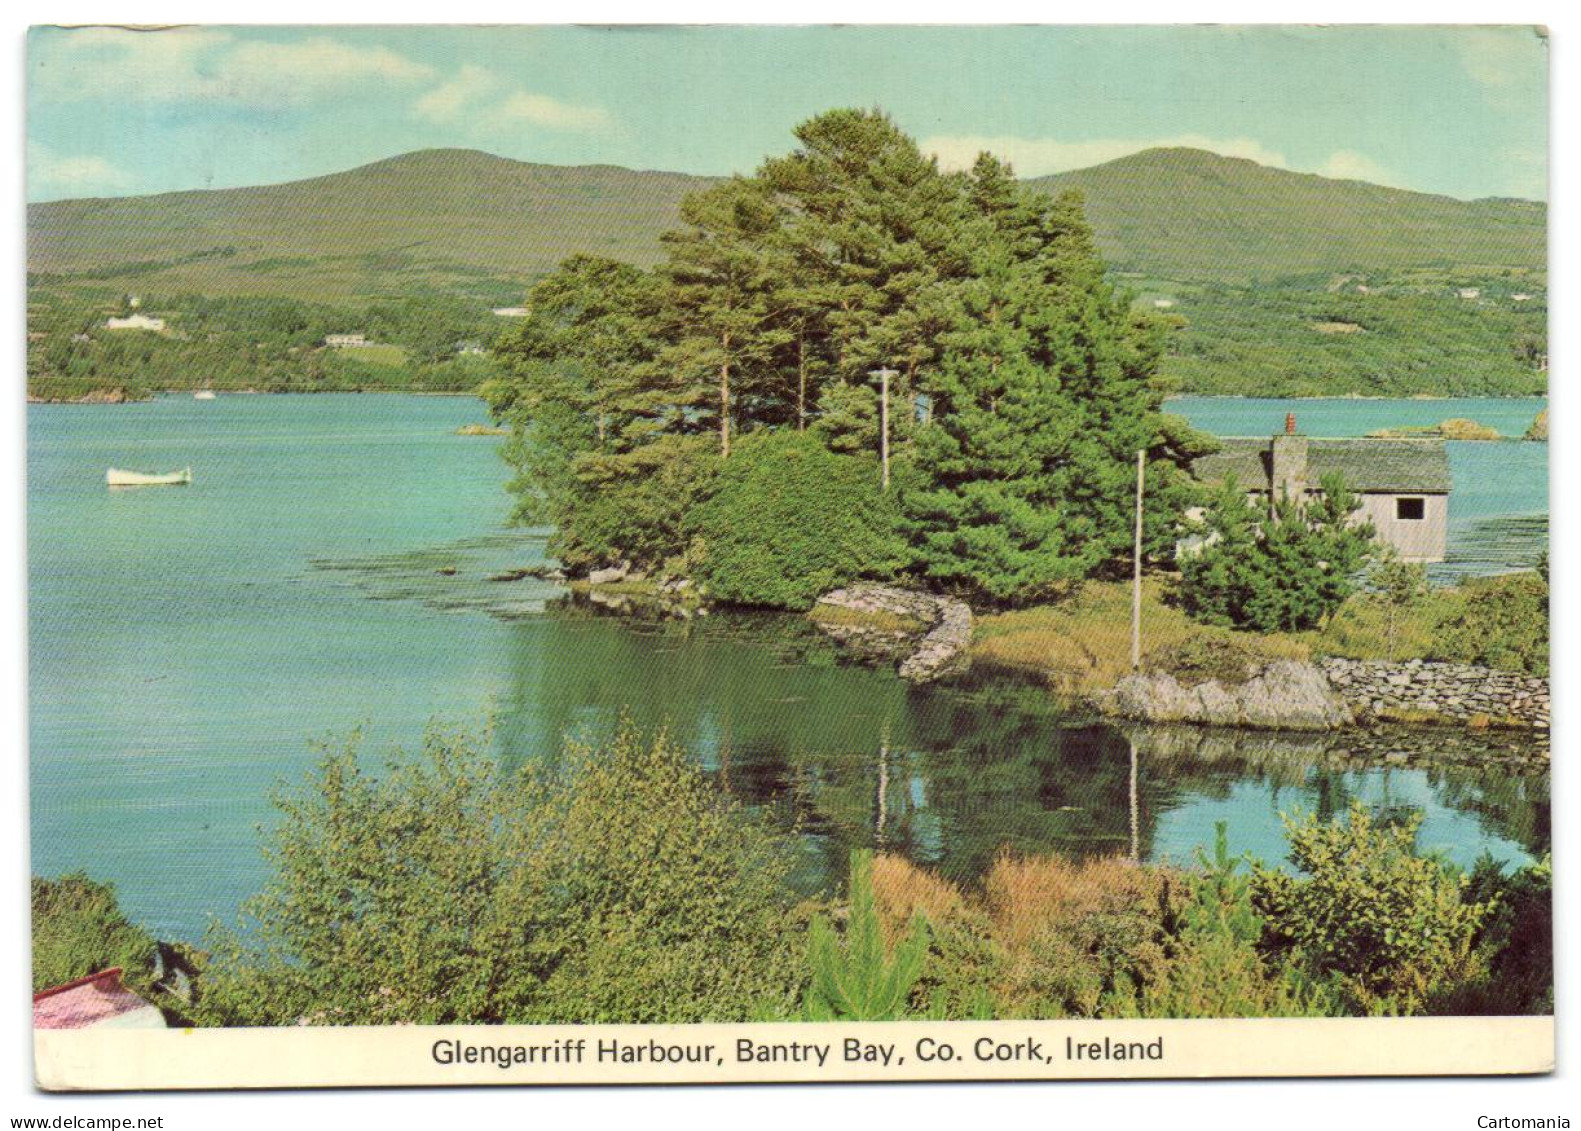 Glengarriff Harbour - Bantry Bay - CO. Cork - Cork